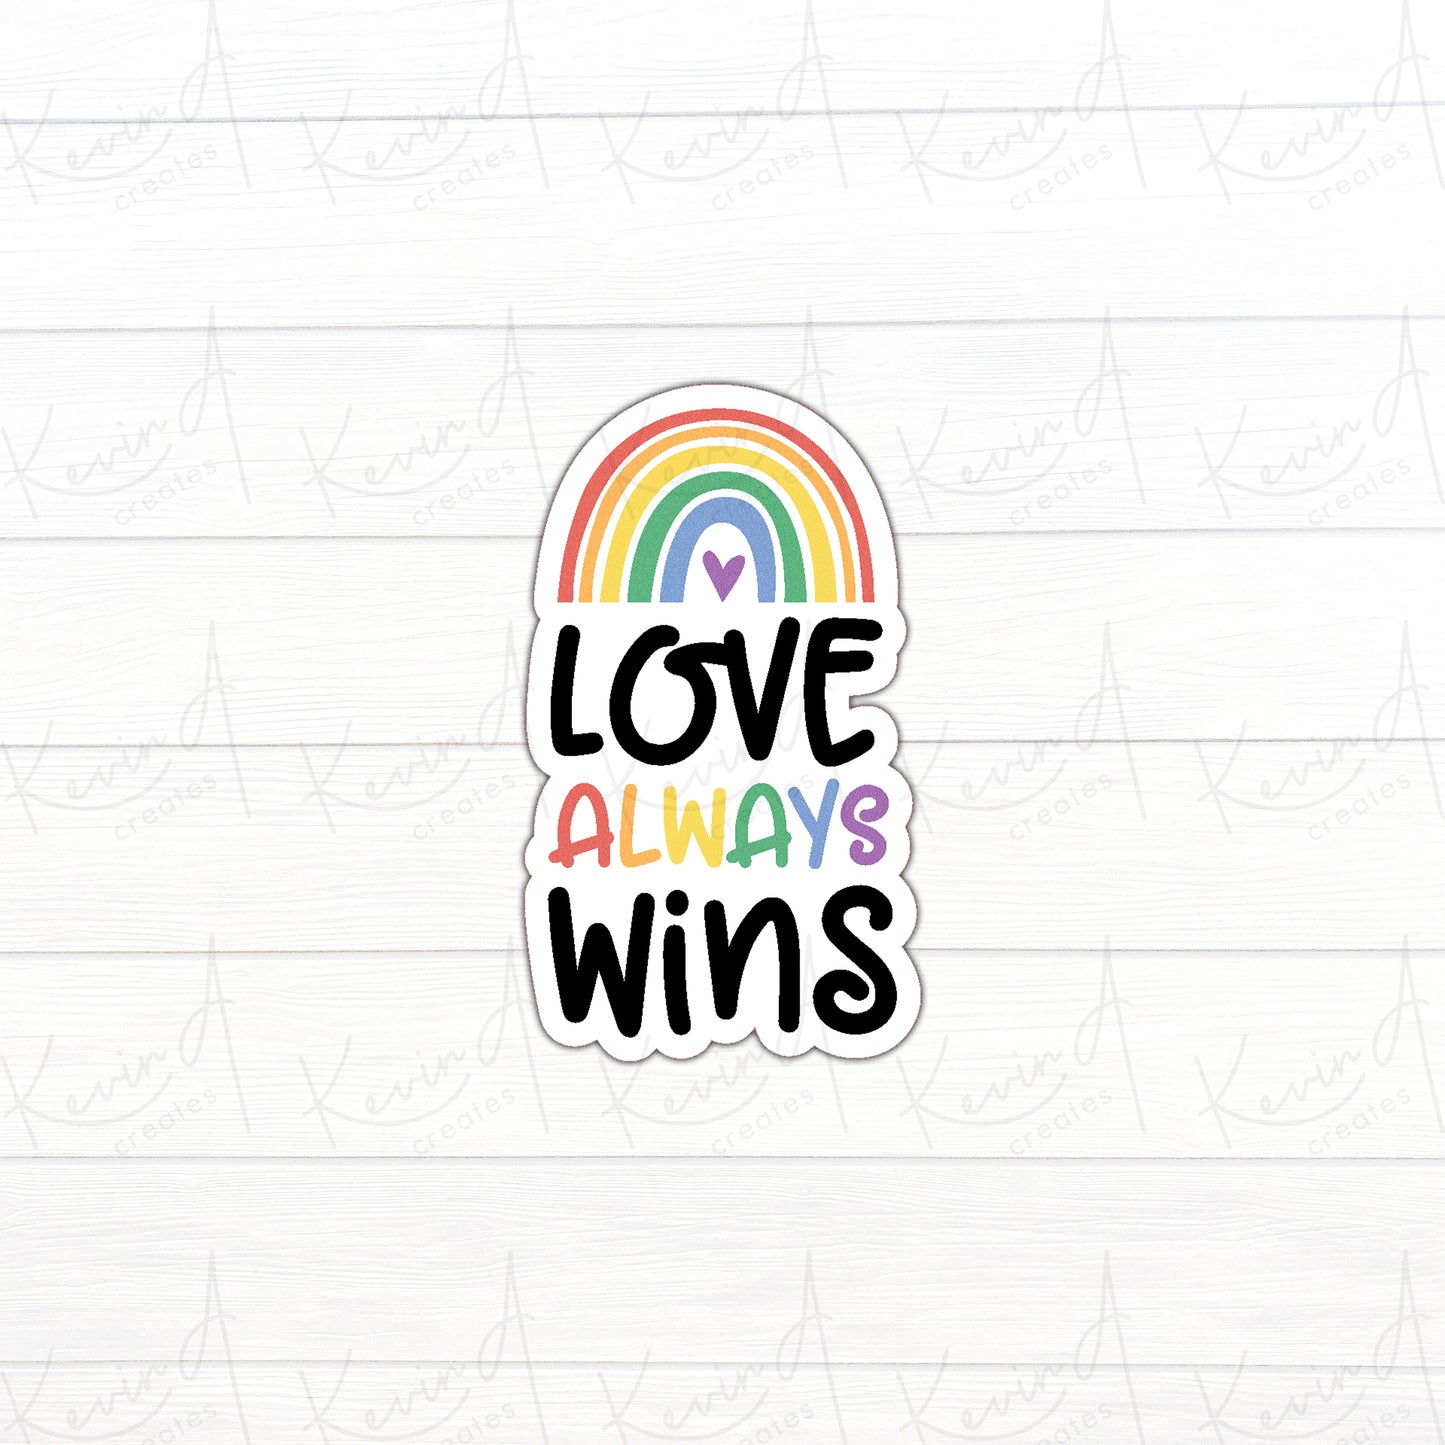 DC-018, "Love Always Win" Pride Die Cut Stickers